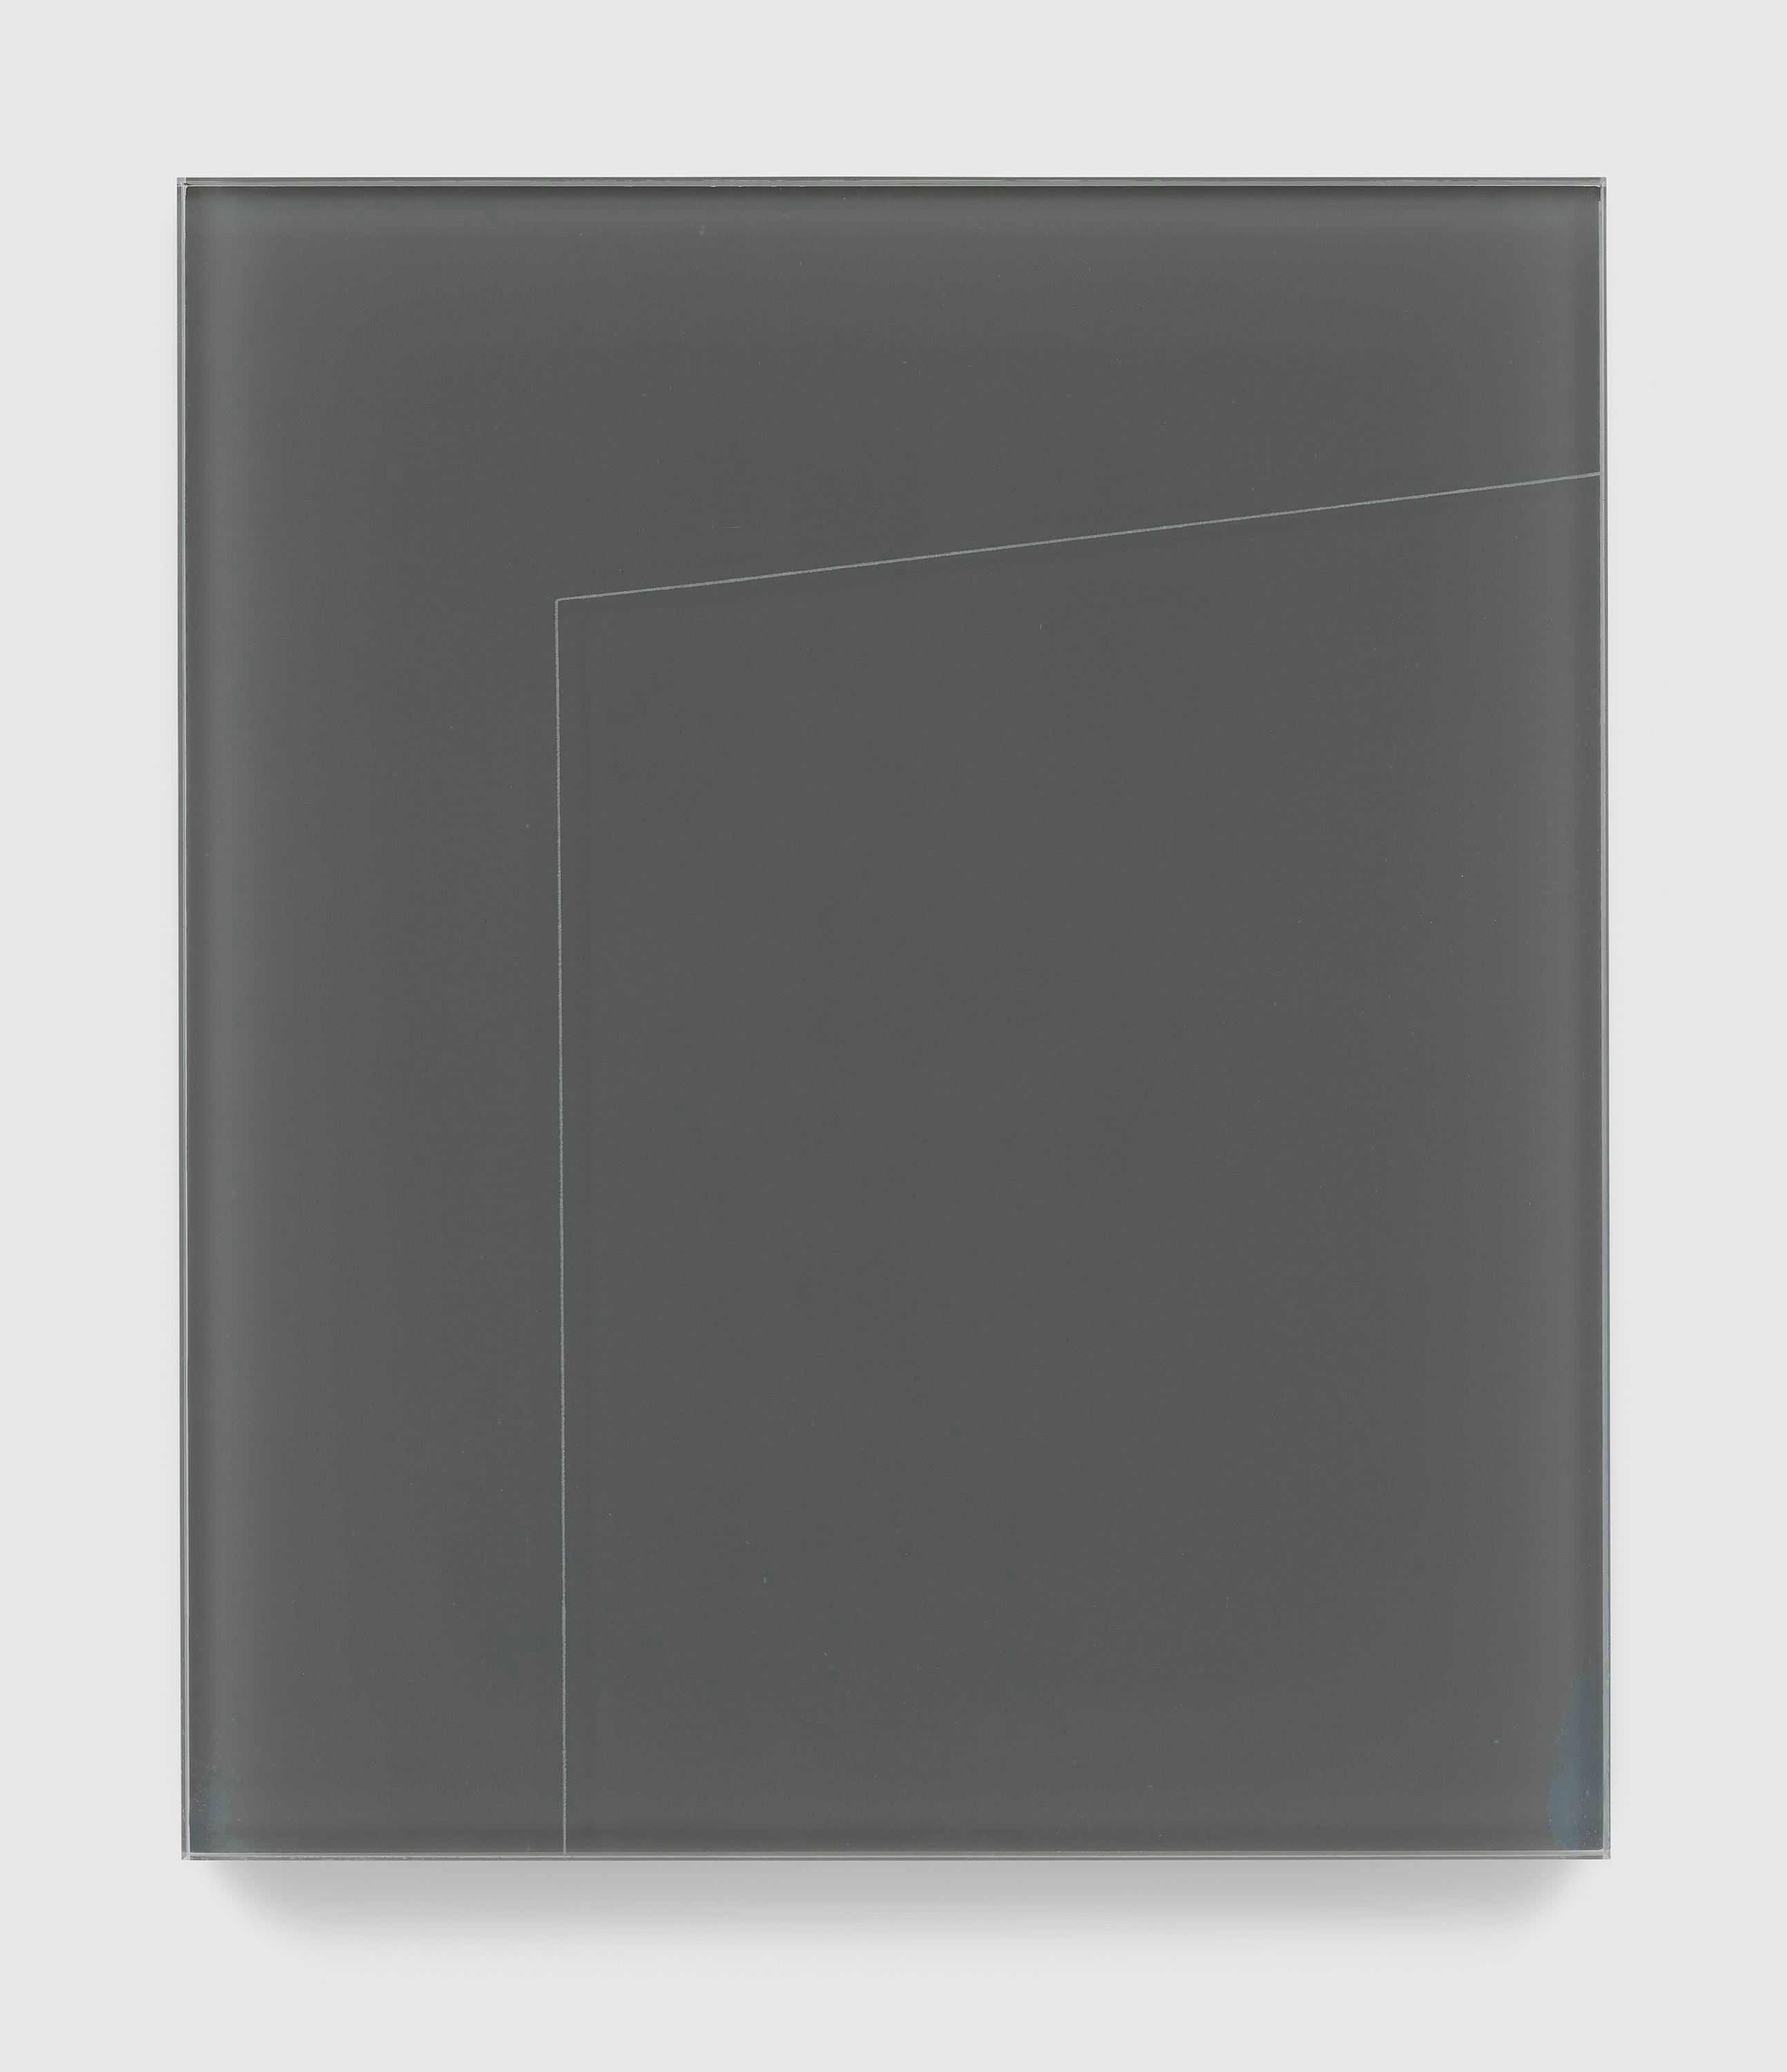 A print by Gerhard Richter, titled Grauer Spiegel, dated 2021.